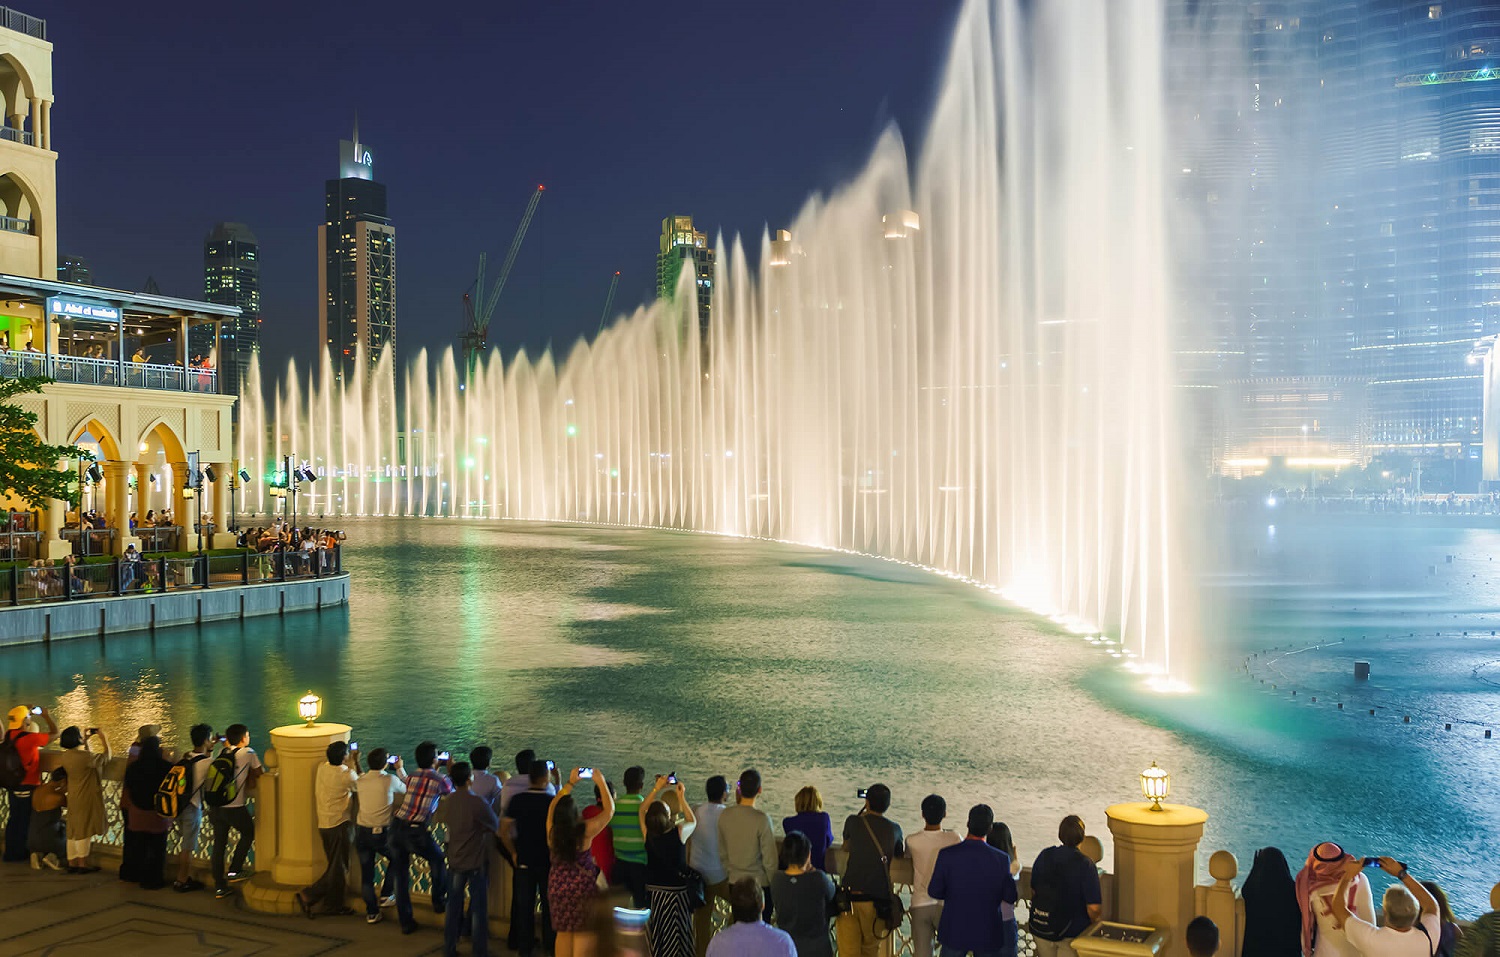 دبى واحدة من أهم المقاصد السياحية فى دول مجلس التعاون